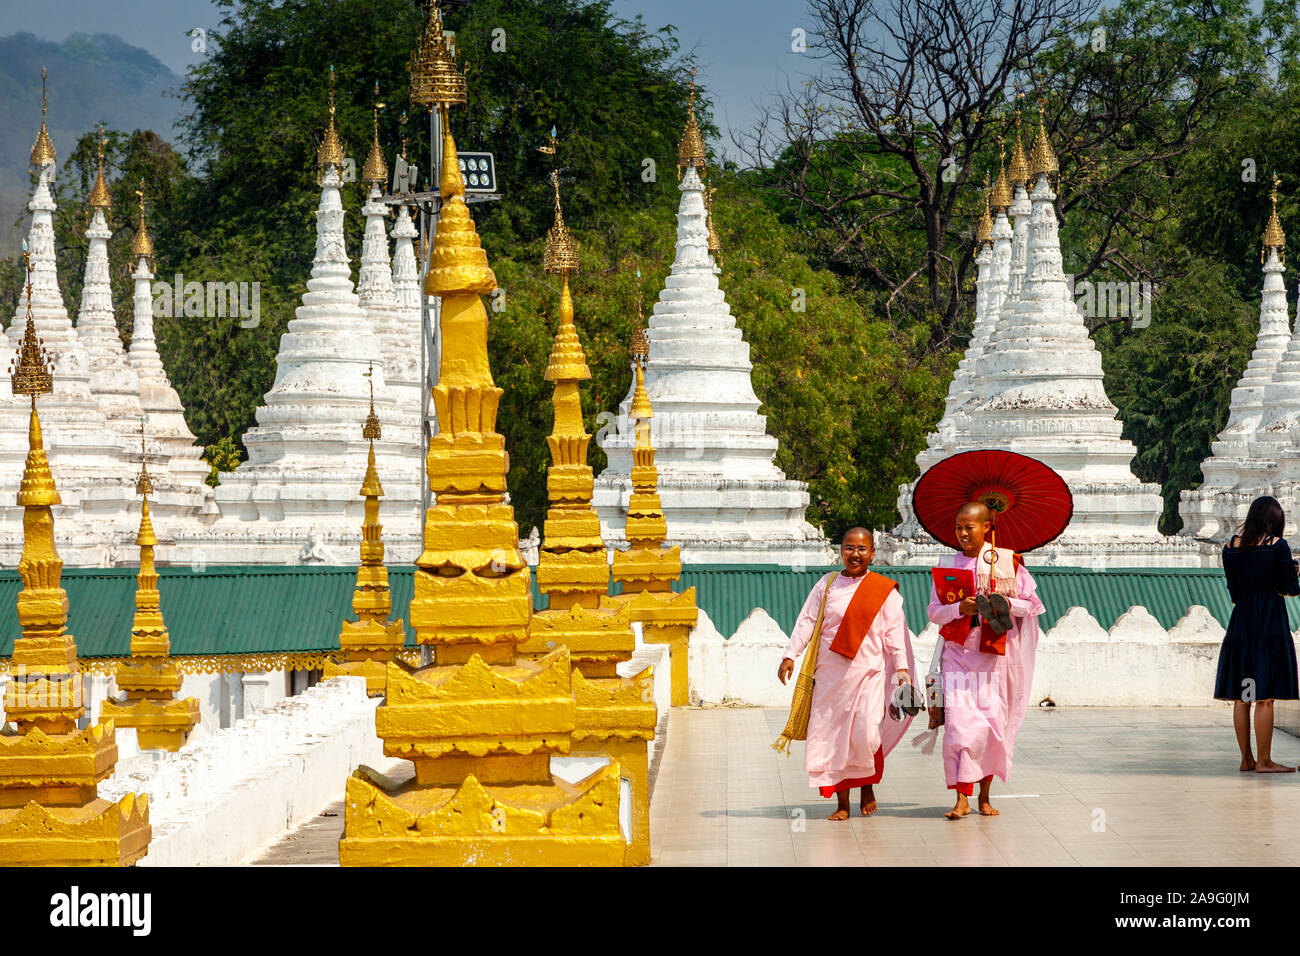 Deux nonnes bouddhistes marcher parmi les pagodes Stupas/à la Sandamuni Paya, Mandalay, Myanmar. Banque D'Images